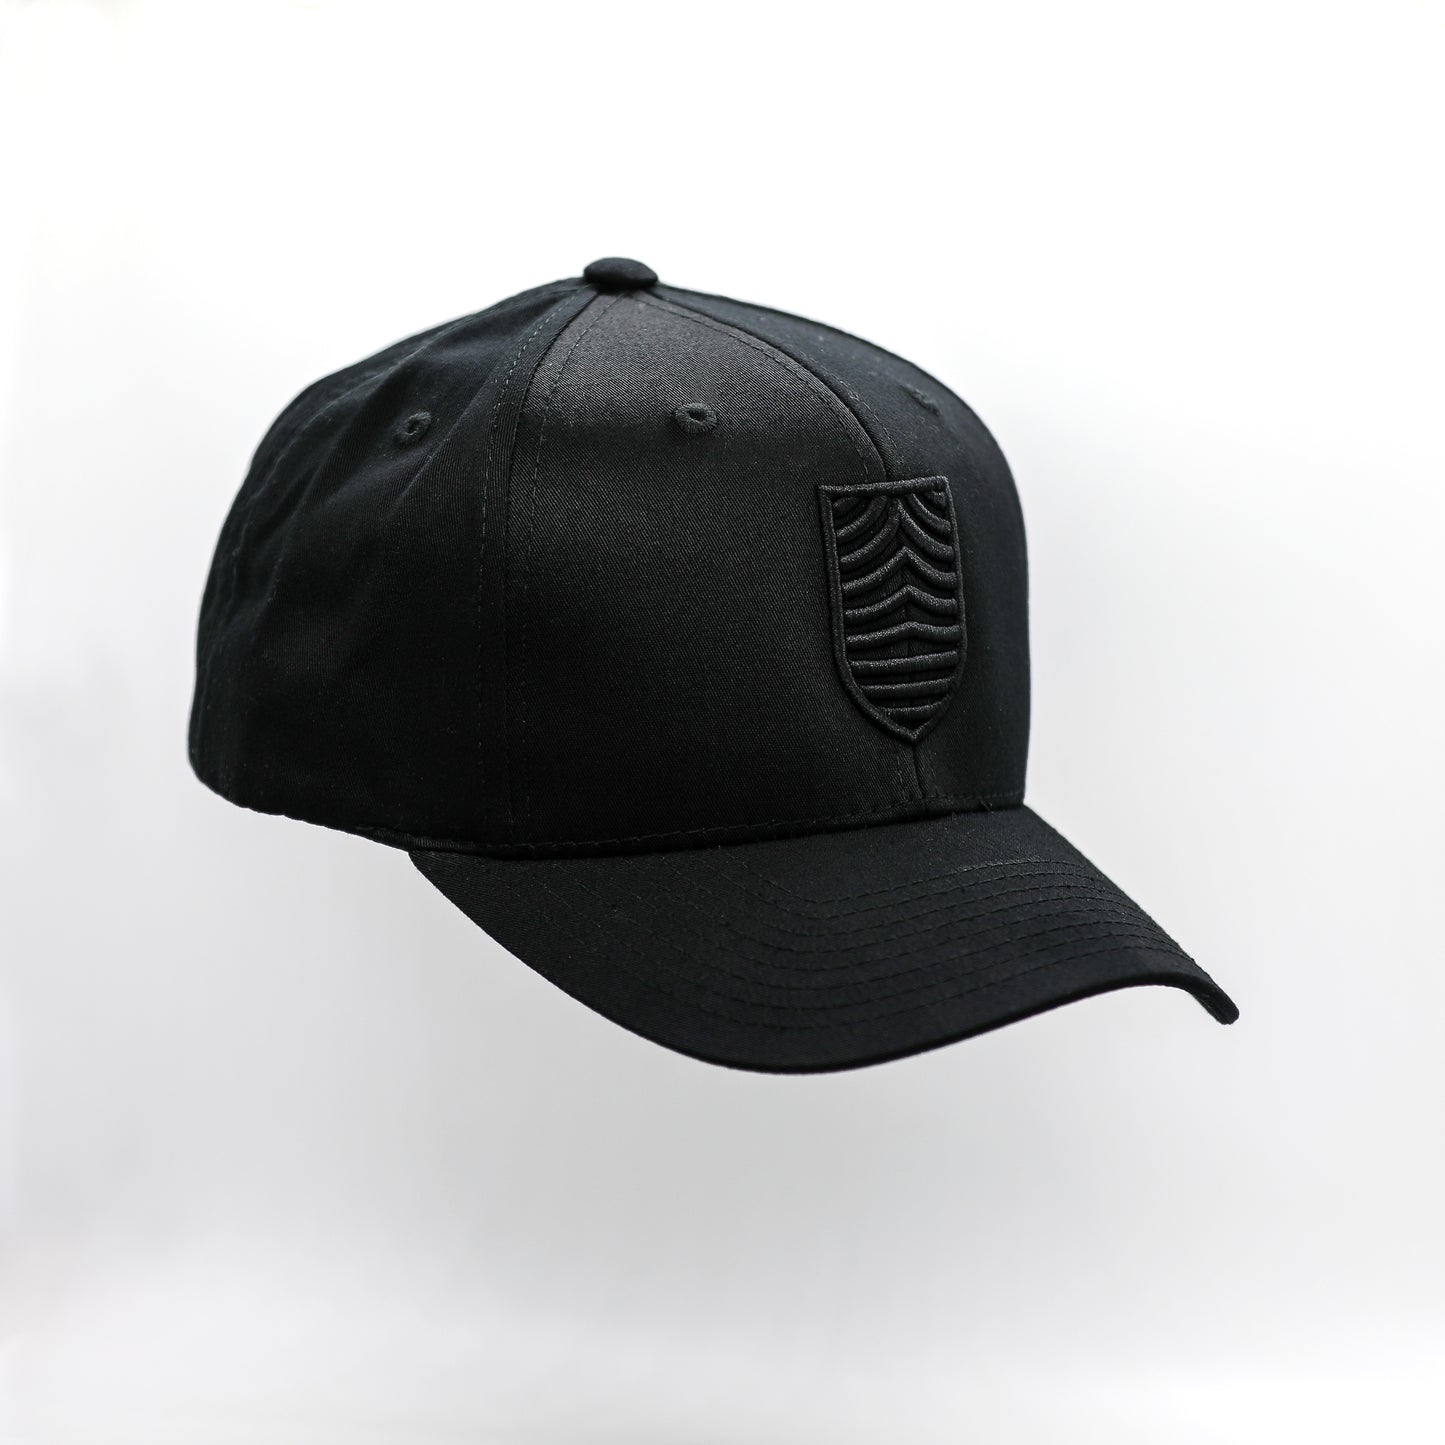 MBFC Signature Black Hat